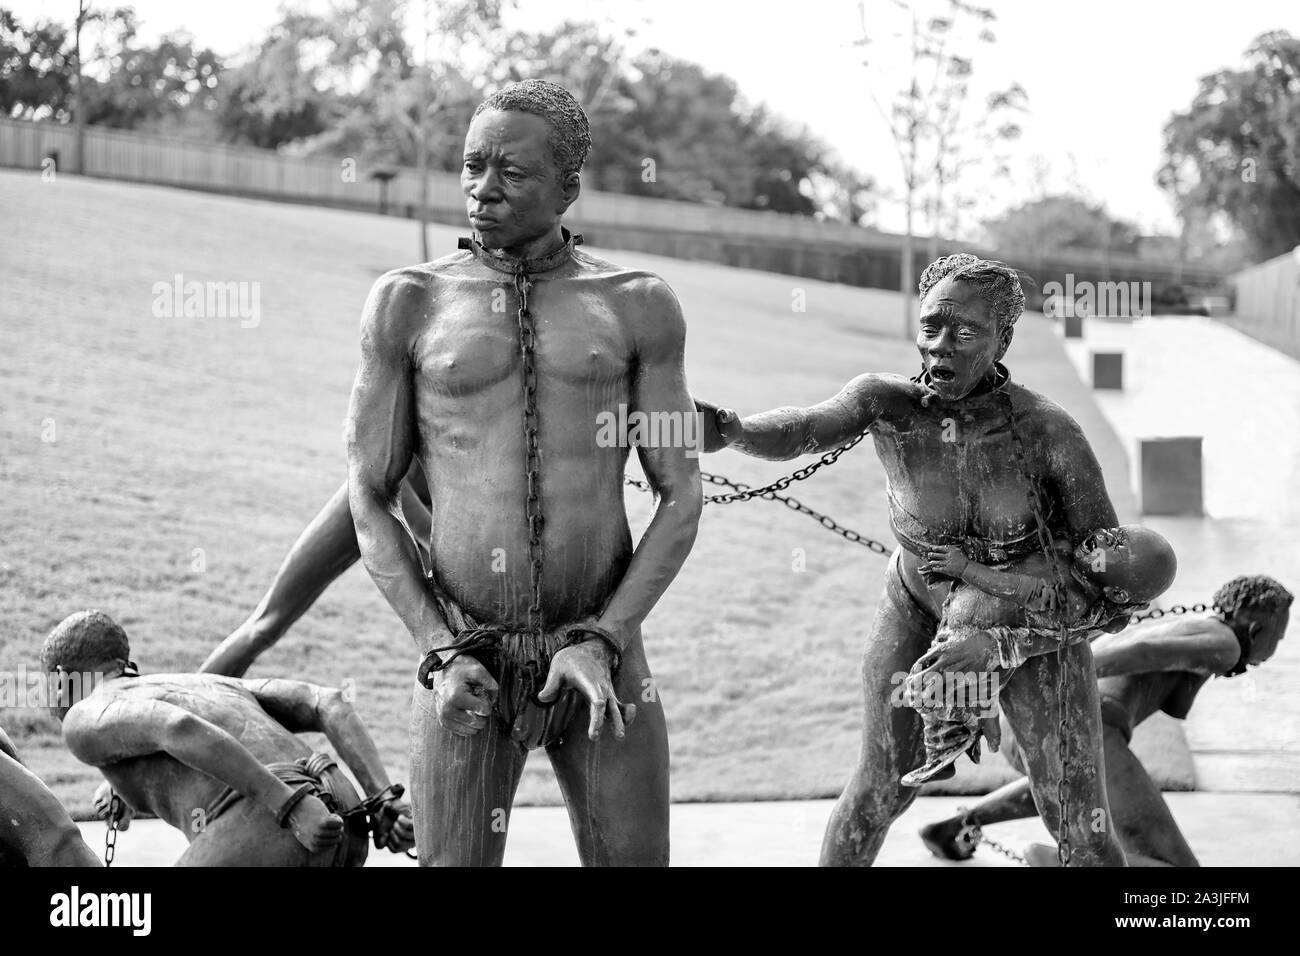 Eine Skulptur, eine Familie von schwarzen Sklaven. Den schwarzen Stecker erscheint hilflos, während seine Frau und Kind zu ihm Hilferufe Stockfoto